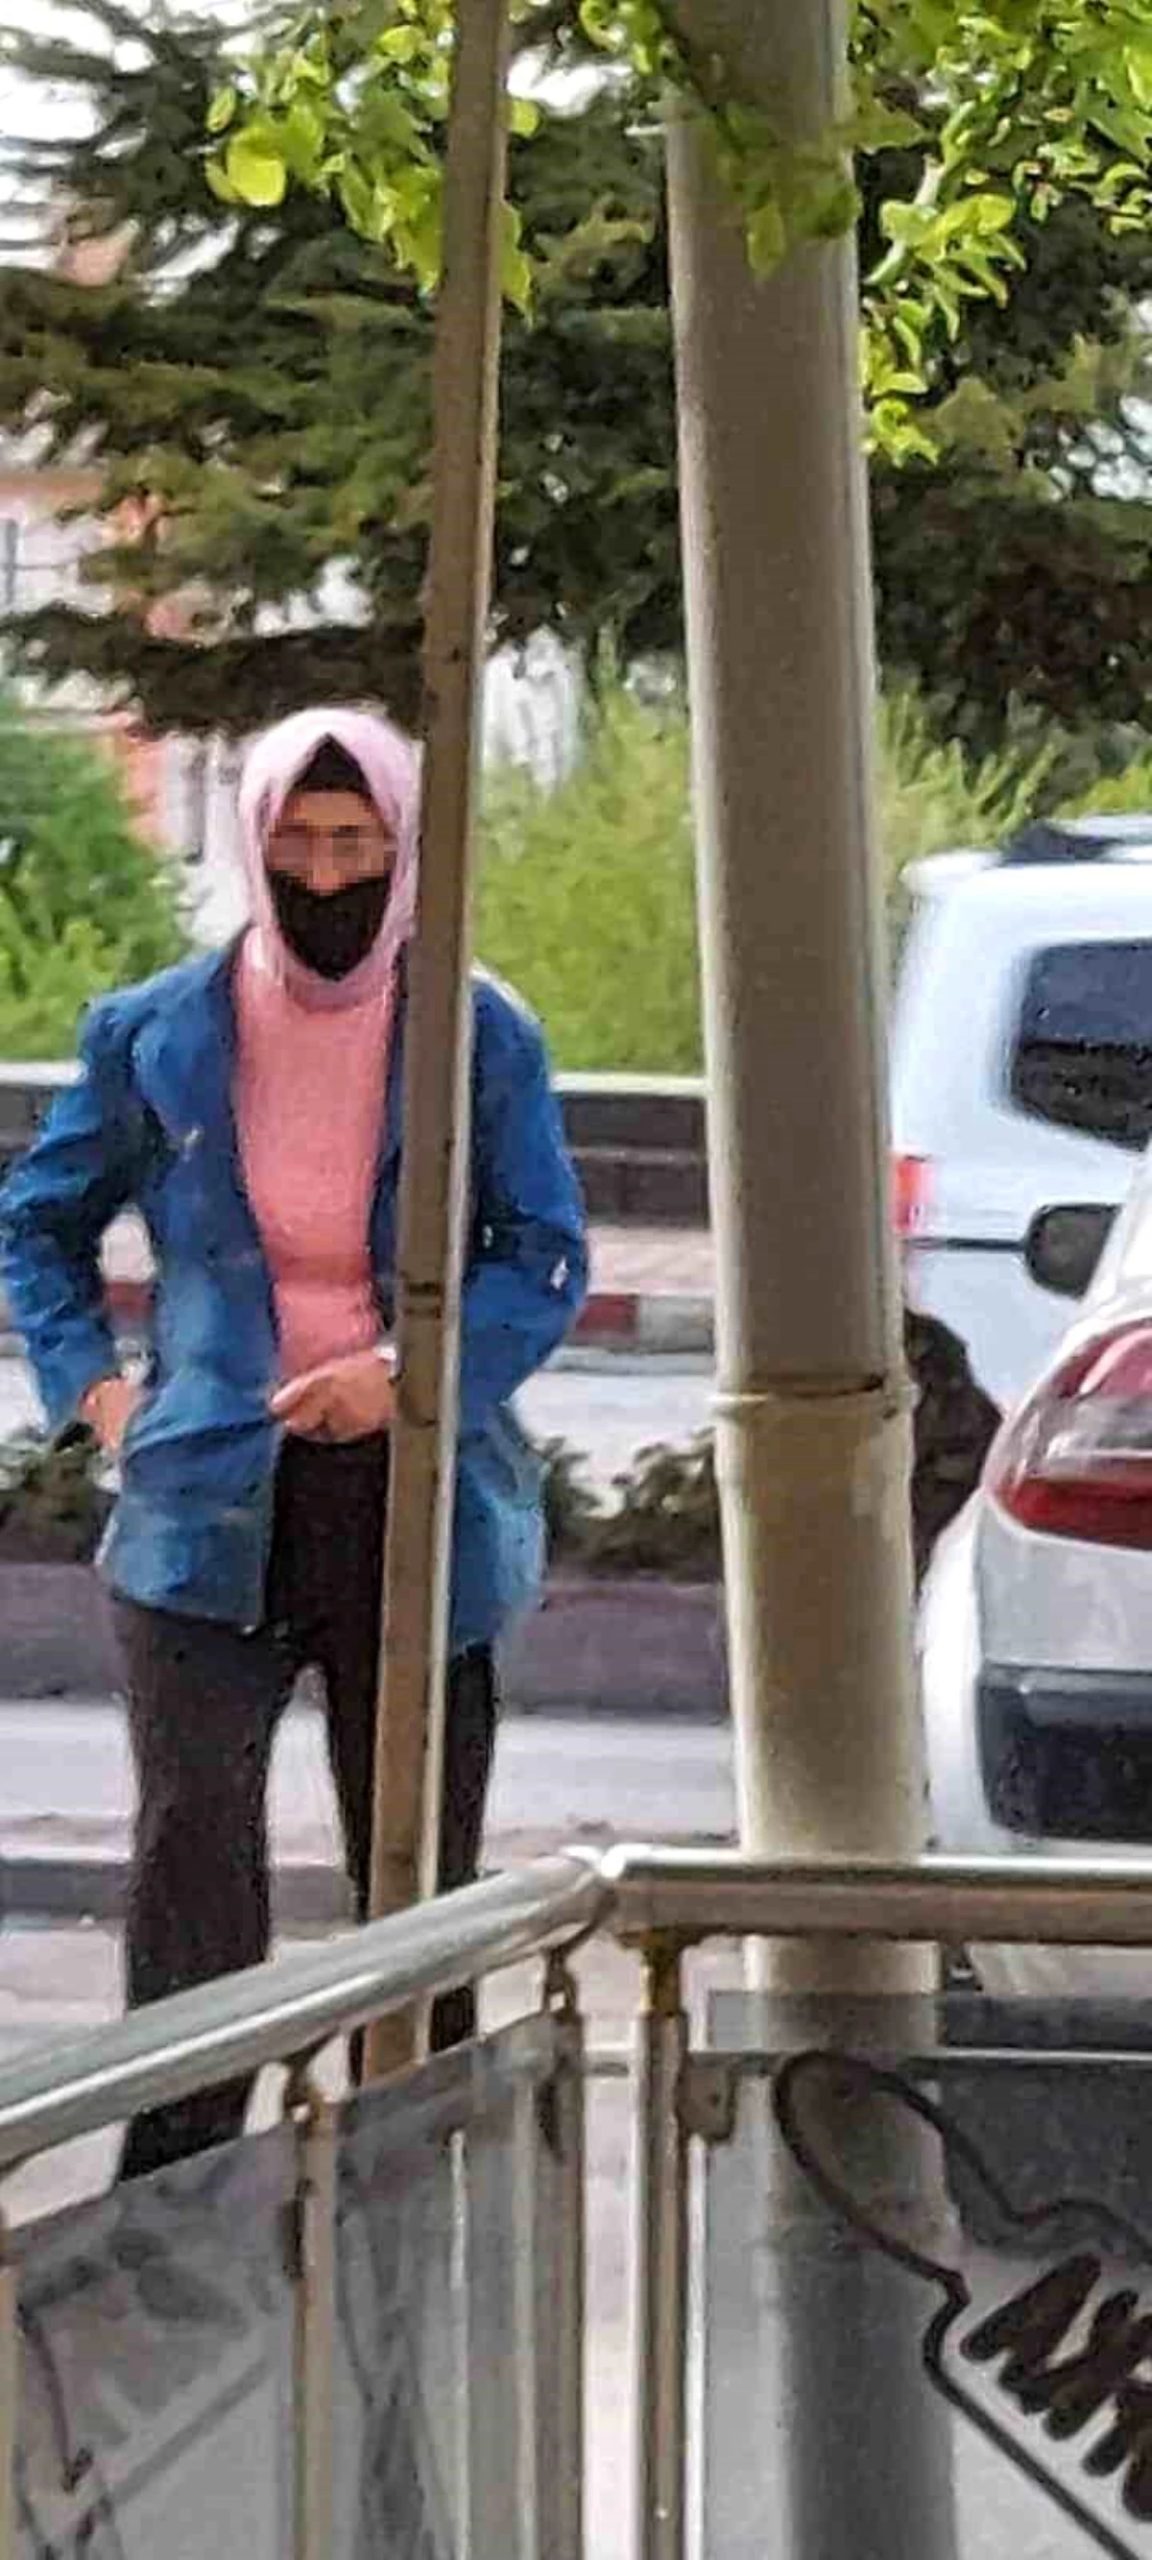 Burdur'da Kadın Kılığına Girip Gezen Şahıs Yakalandı